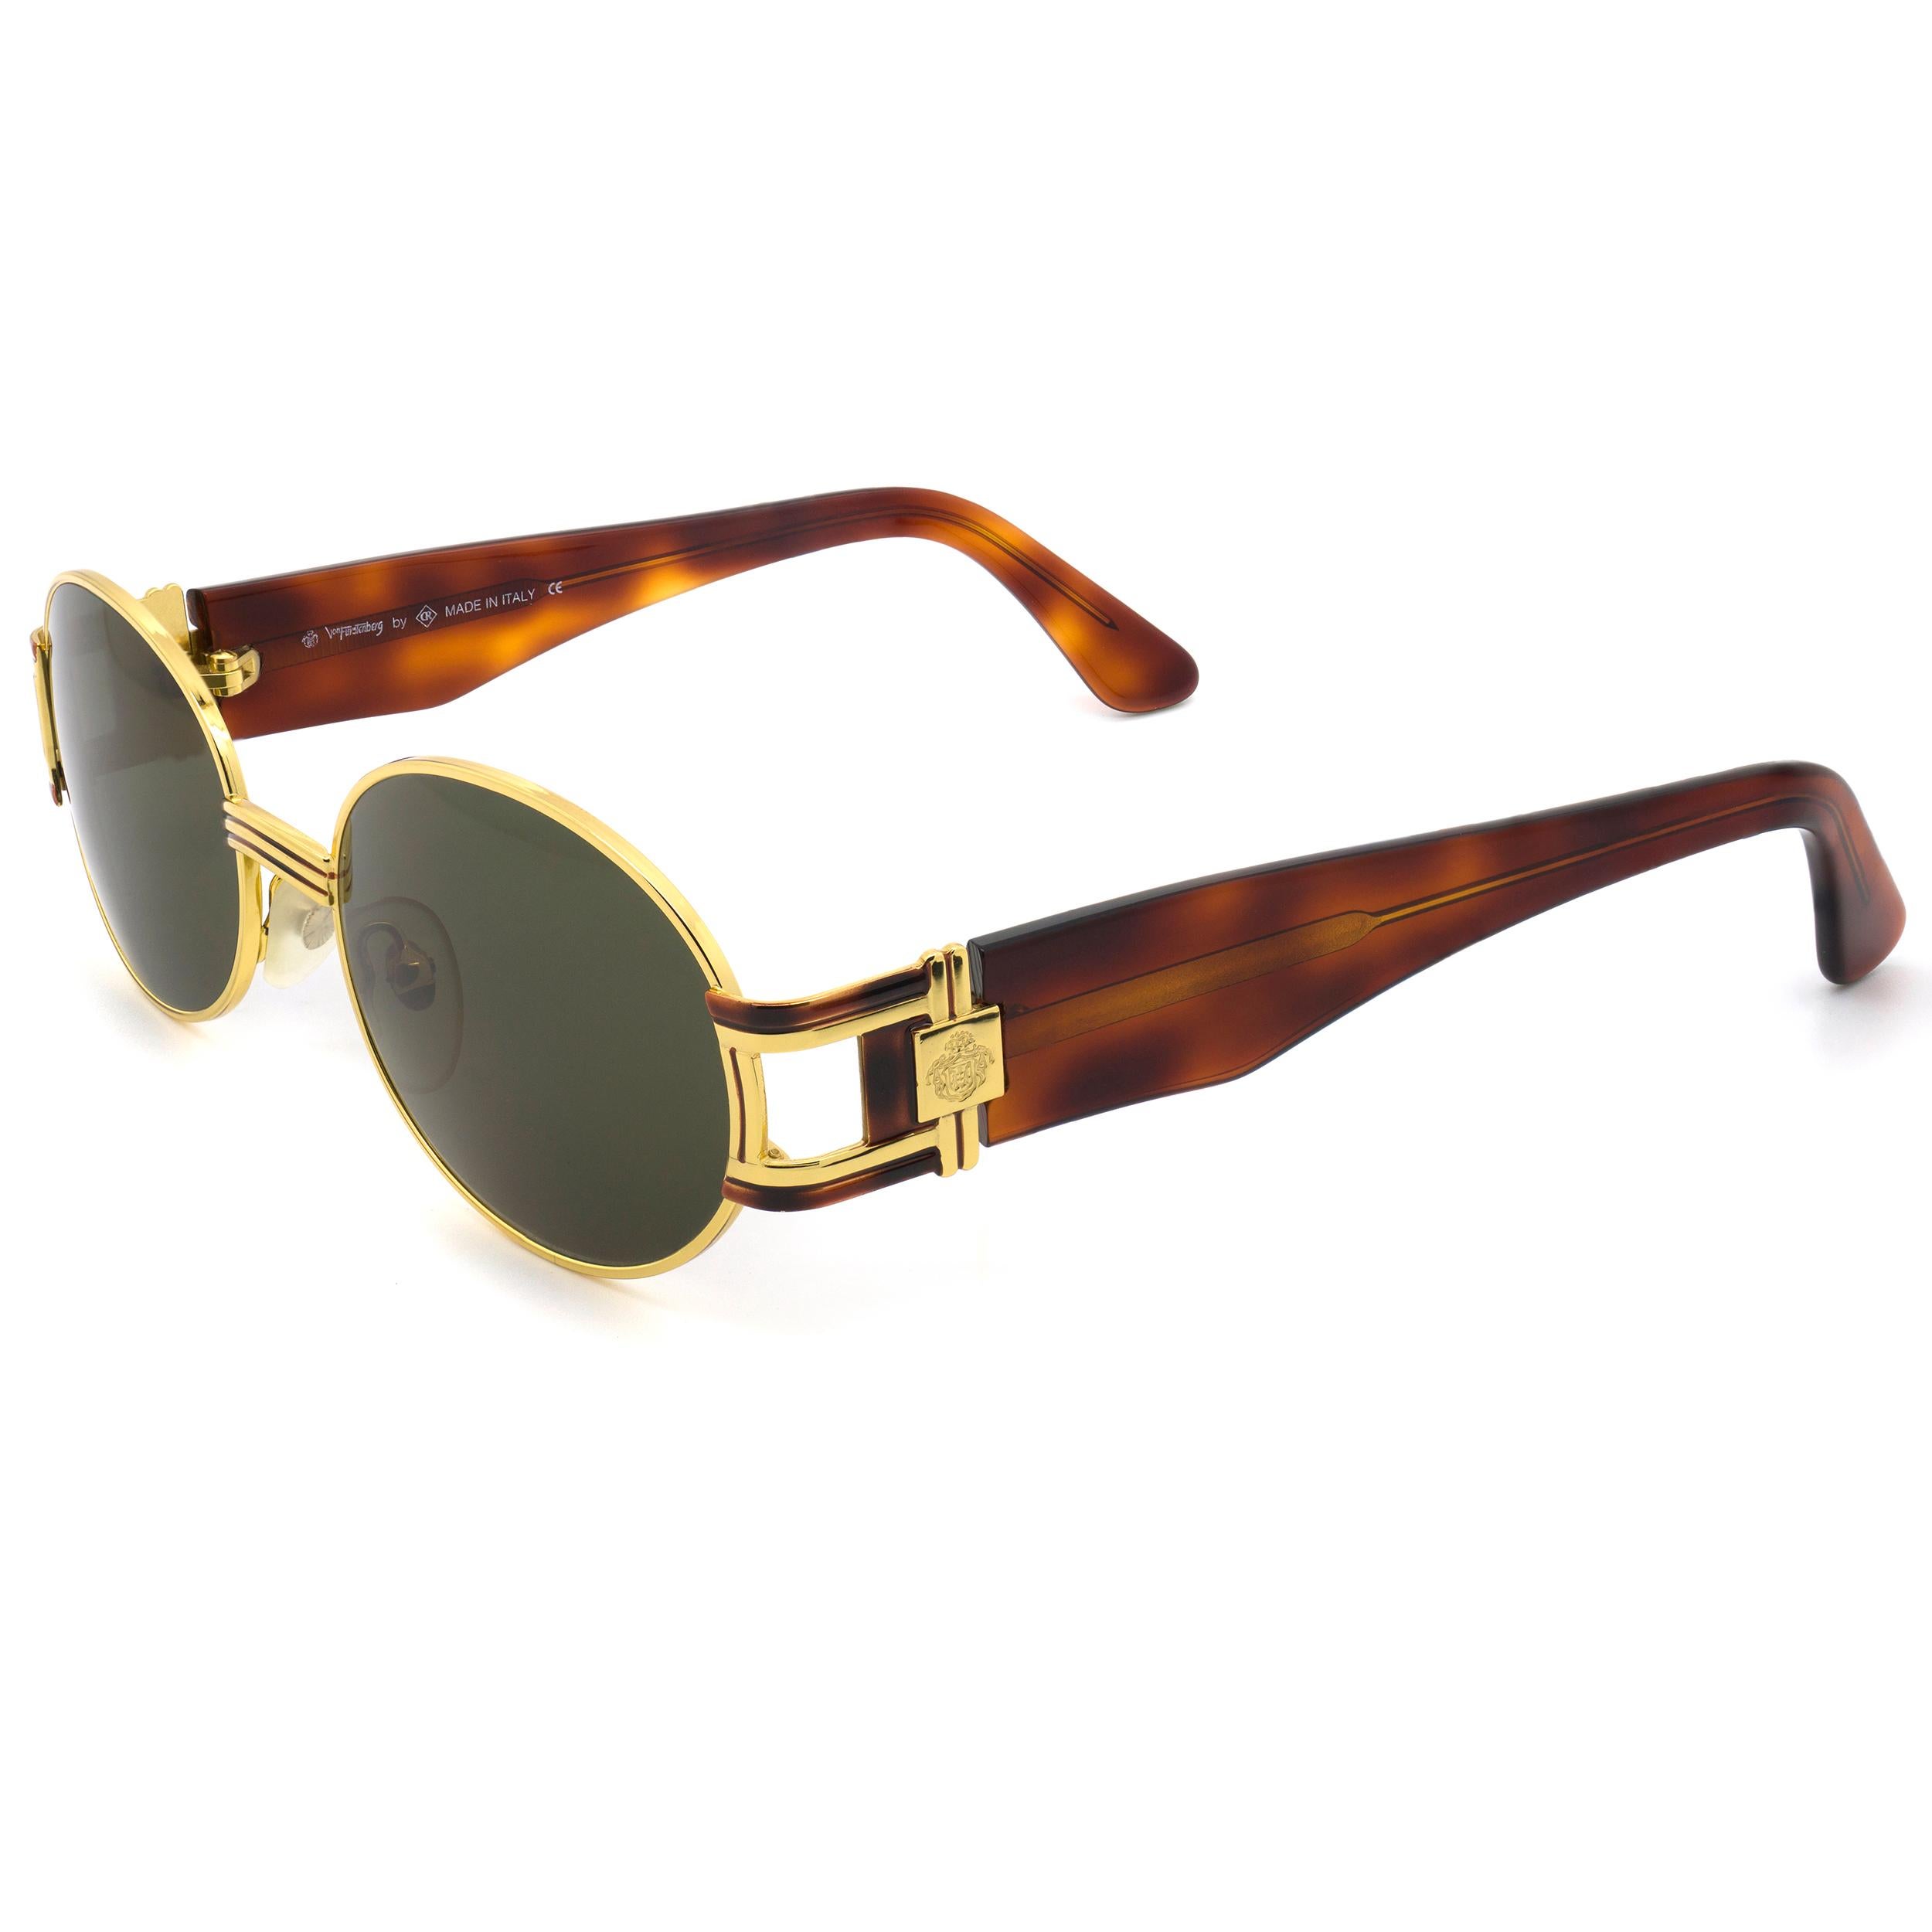 Brown Prince Egon von Furstenberg round vintage sunglasses, Italy 80s